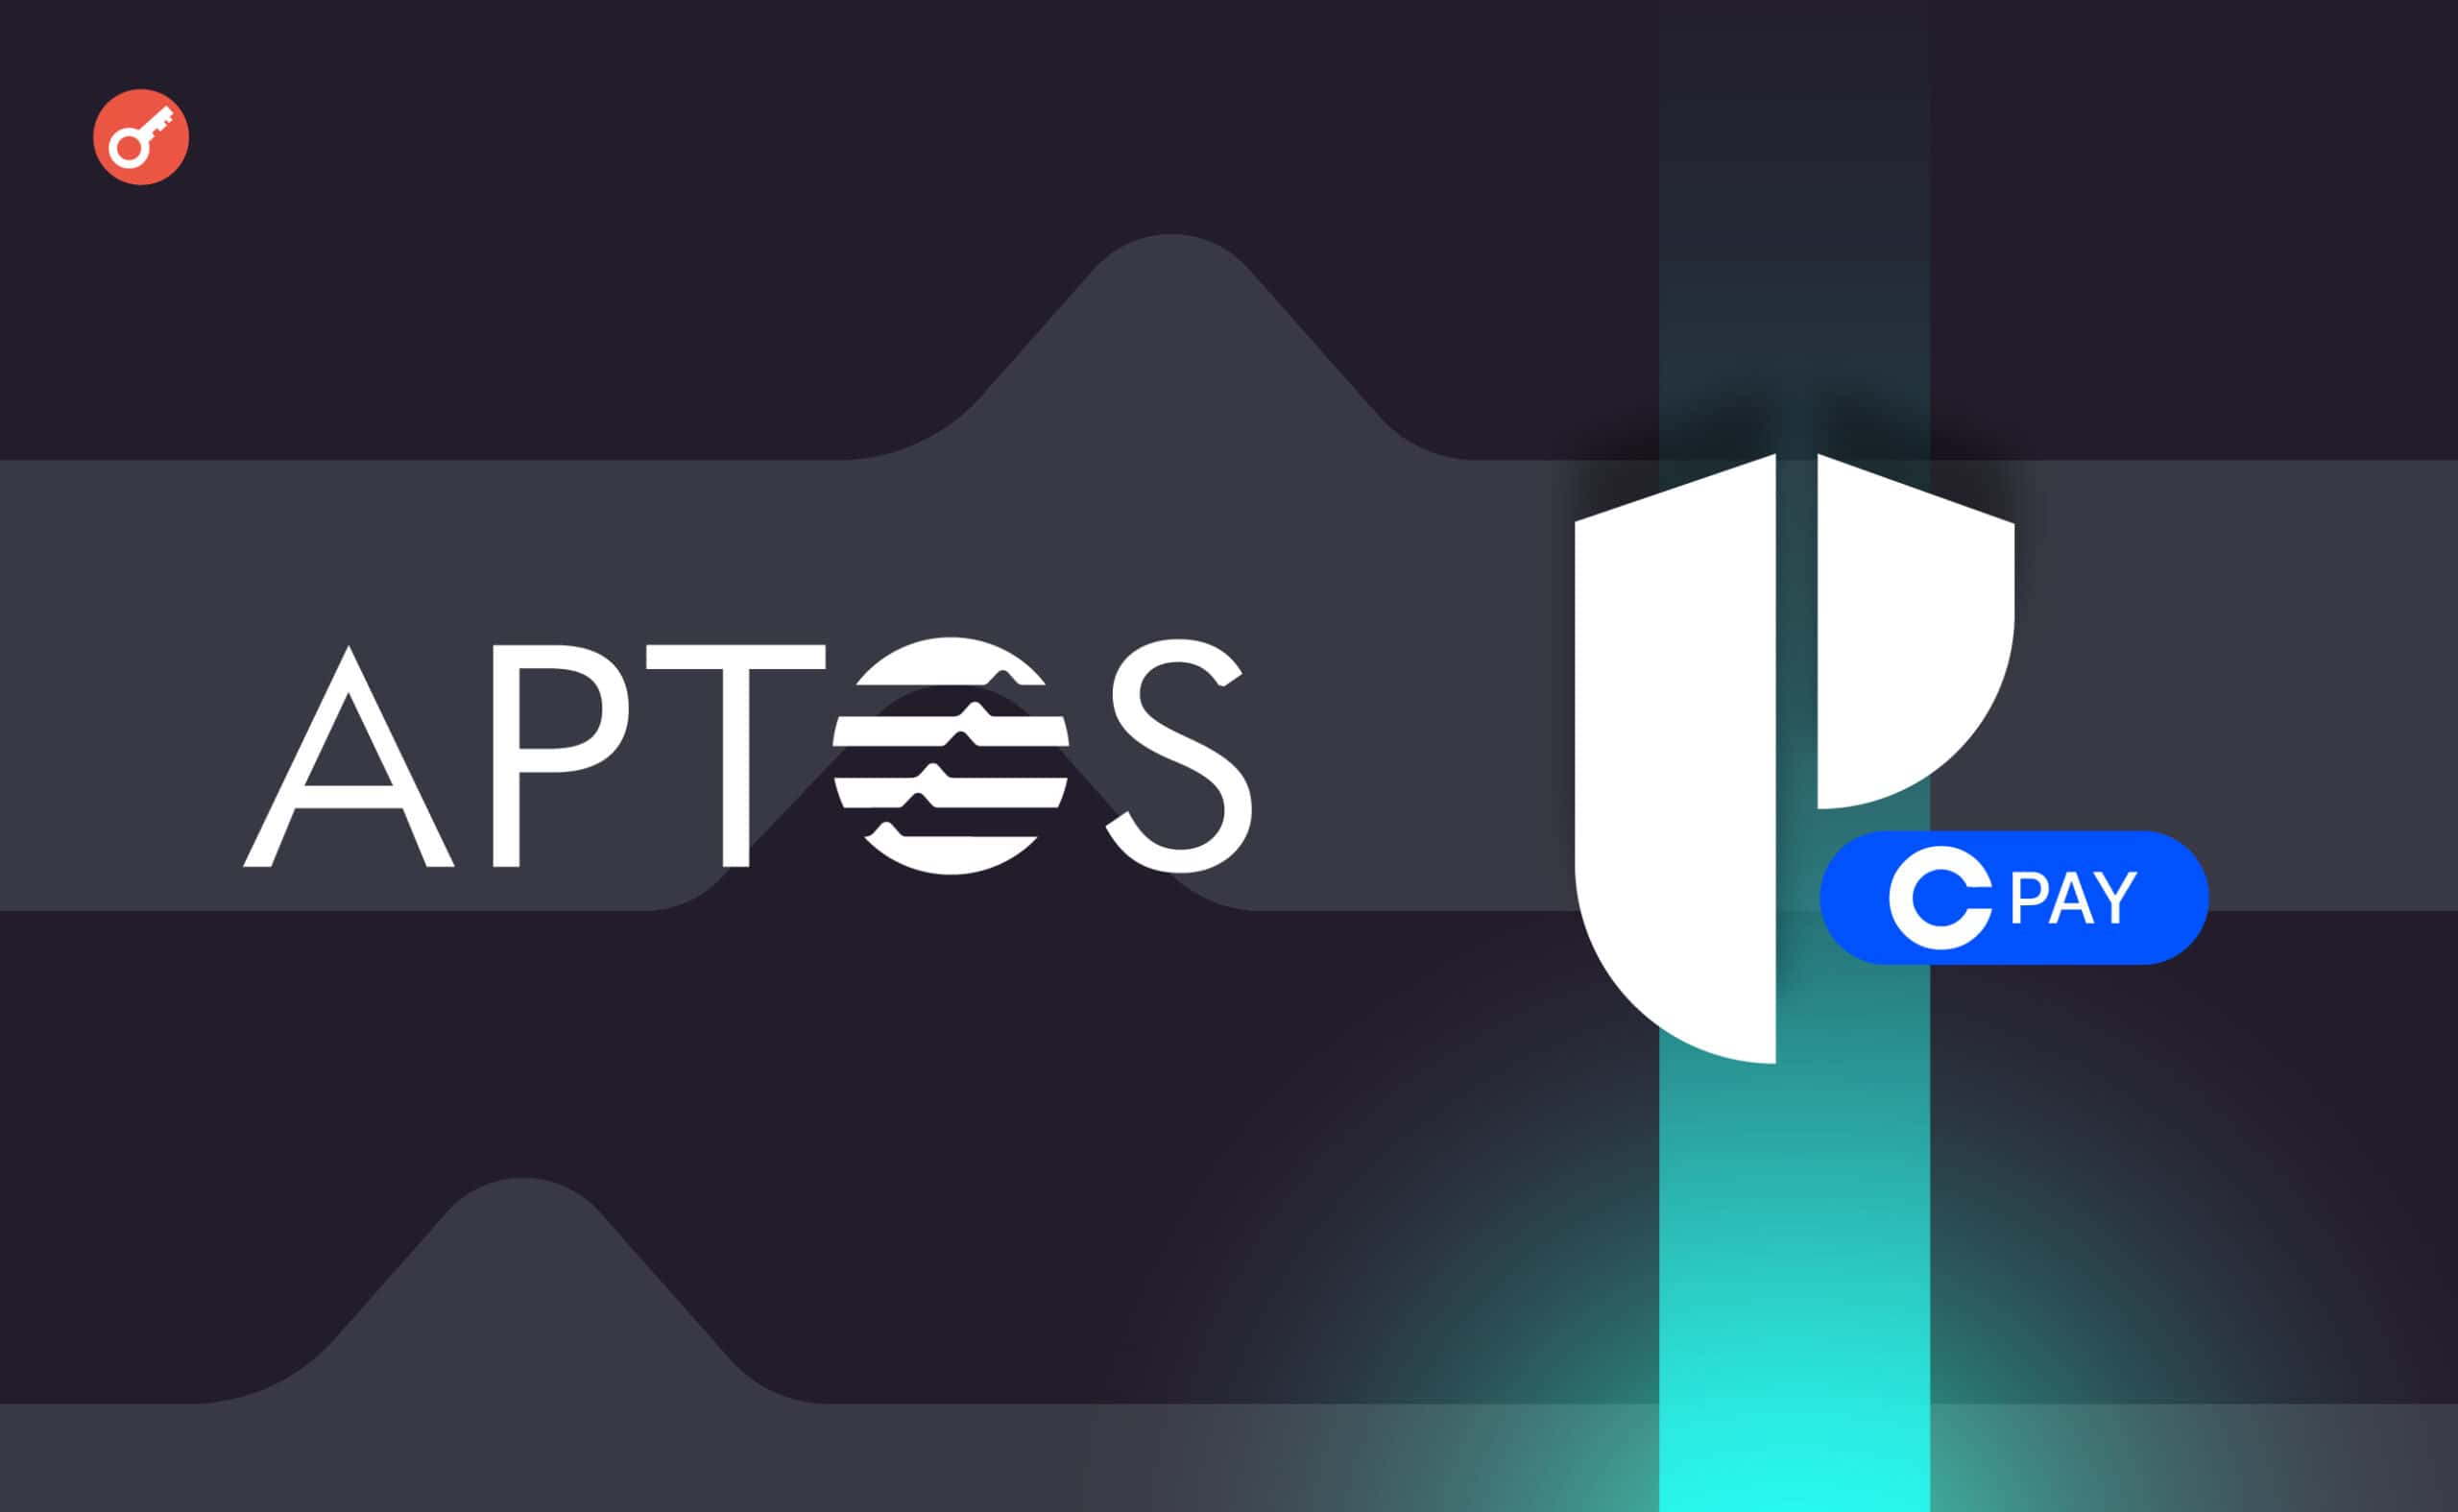 Aptos Labs добавила поддержку Coinbase Pay к криптокошельку Petra. Заглавный коллаж новости.